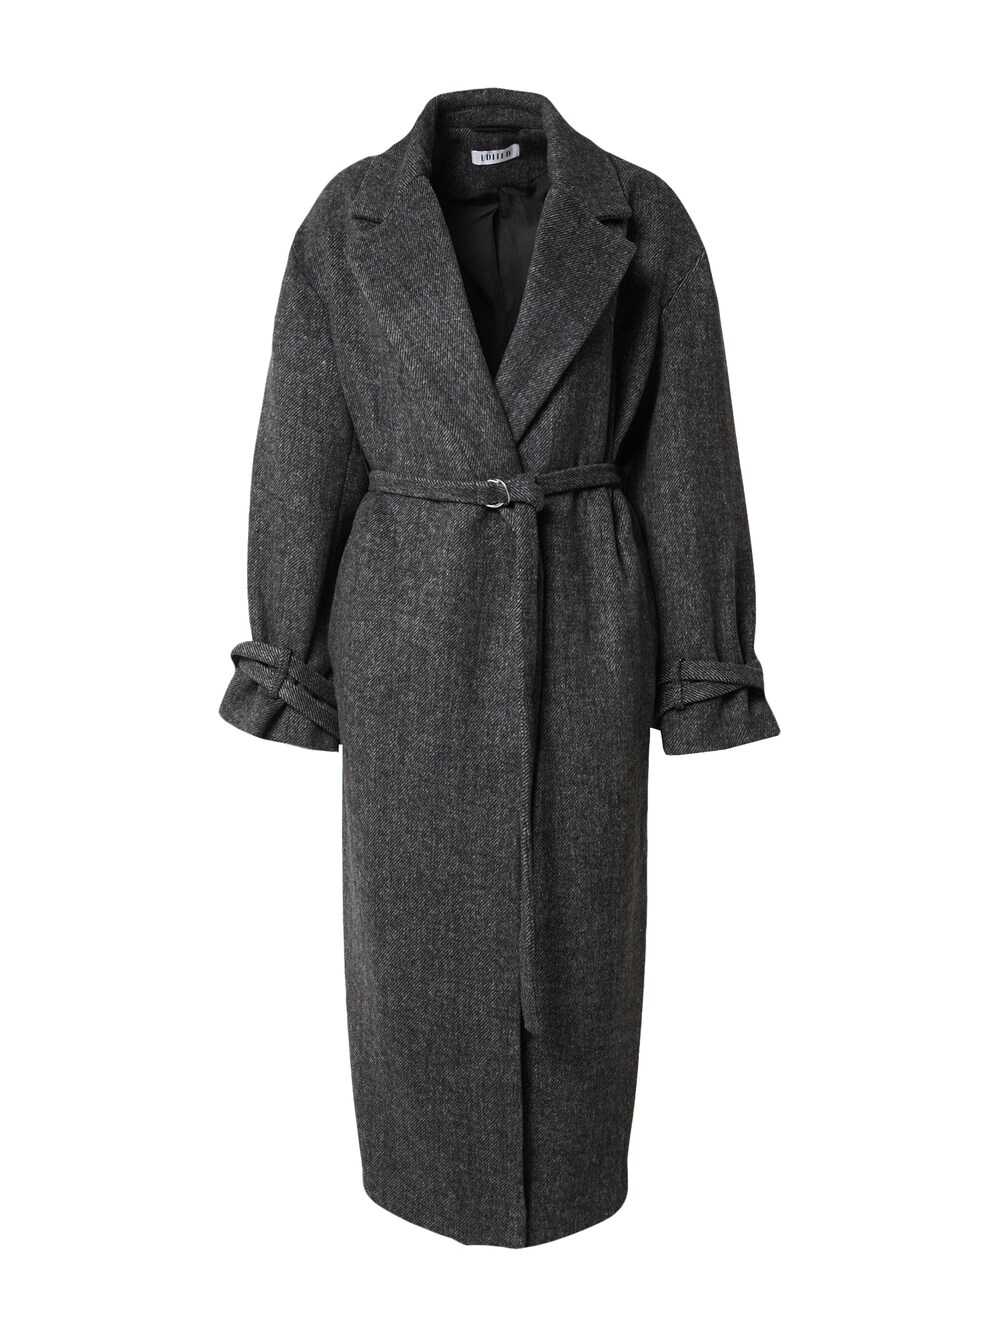 Межсезонное пальто EDITED Mareile, темно-серый межсезонное пальто we fashion темно серый